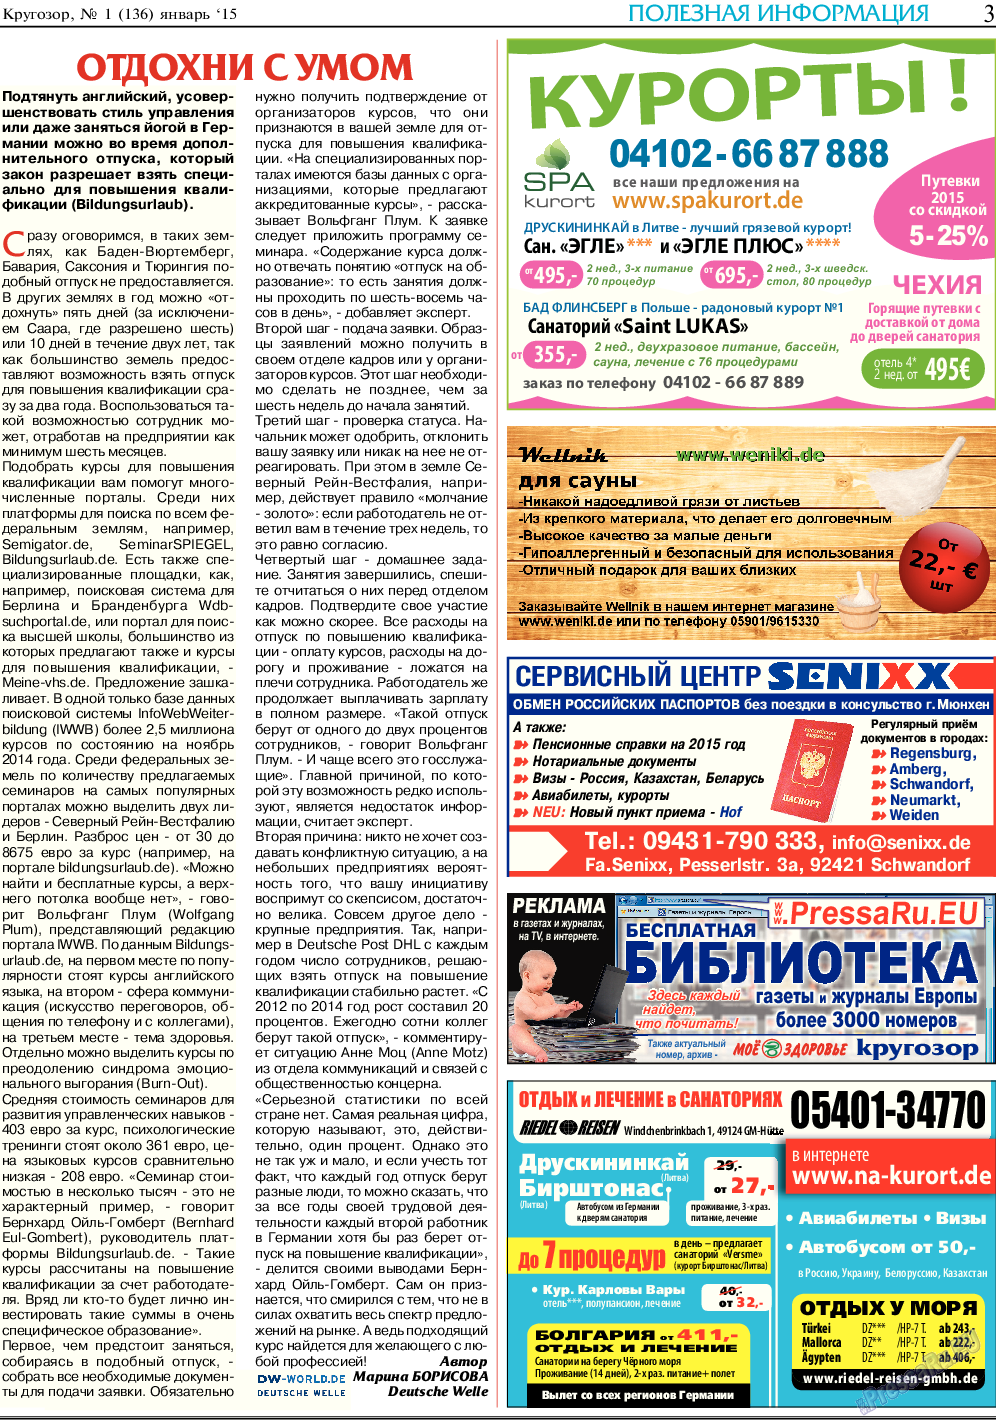 Кругозор (газета). 2015 год, номер 1, стр. 3